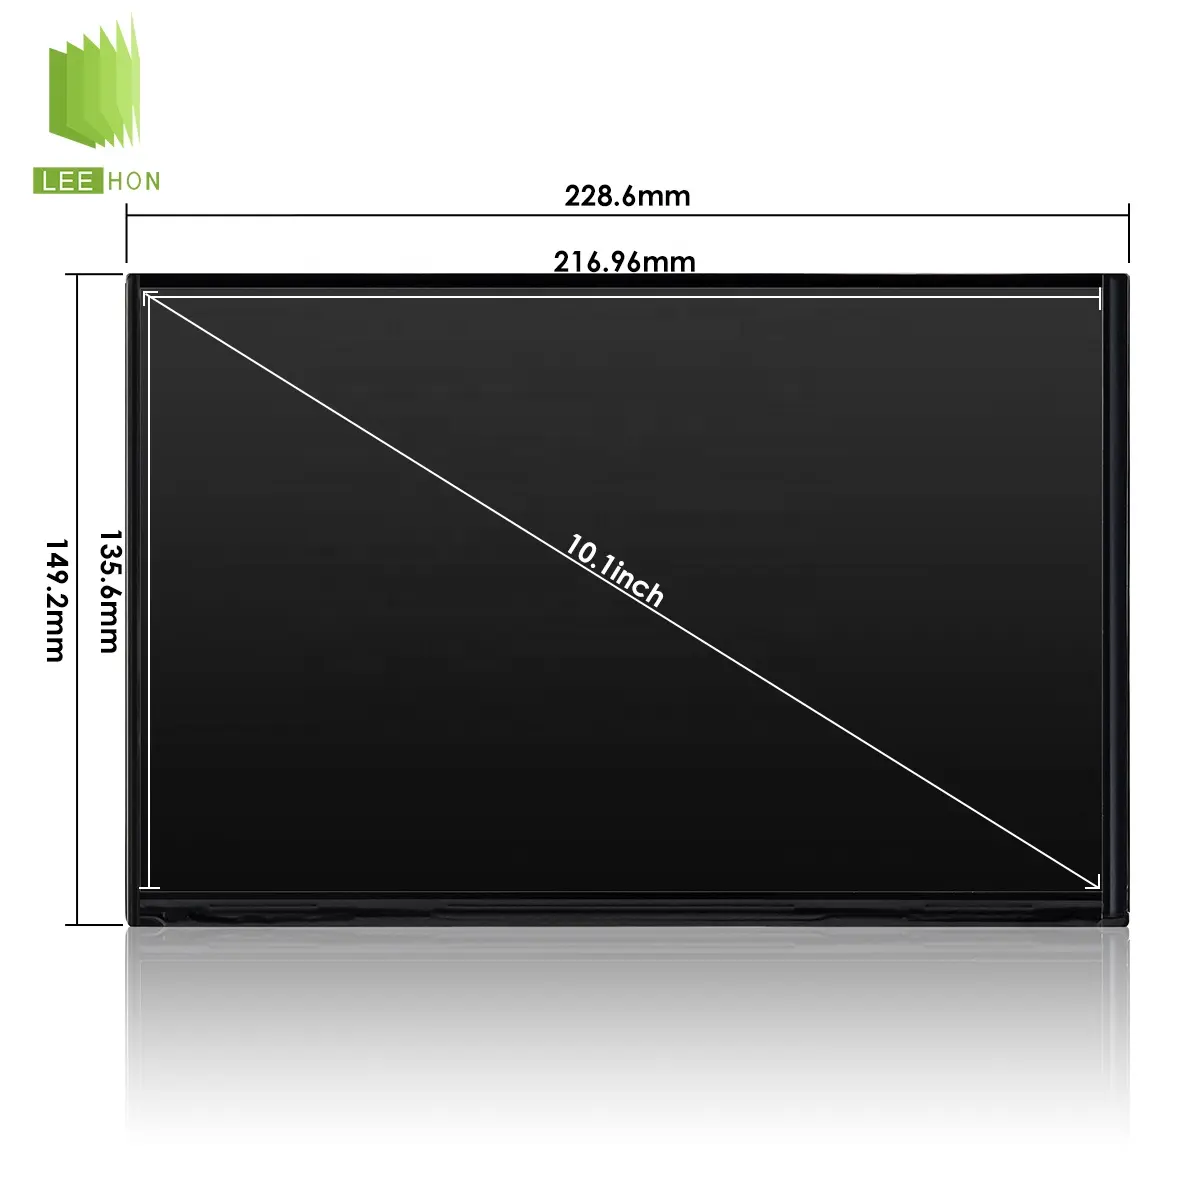 Pantalla LCD Original BOE de grado industrial, interfaz LVDS eDP, brillo de alto contraste, Panel LCD de temperatura amplia para exteriores